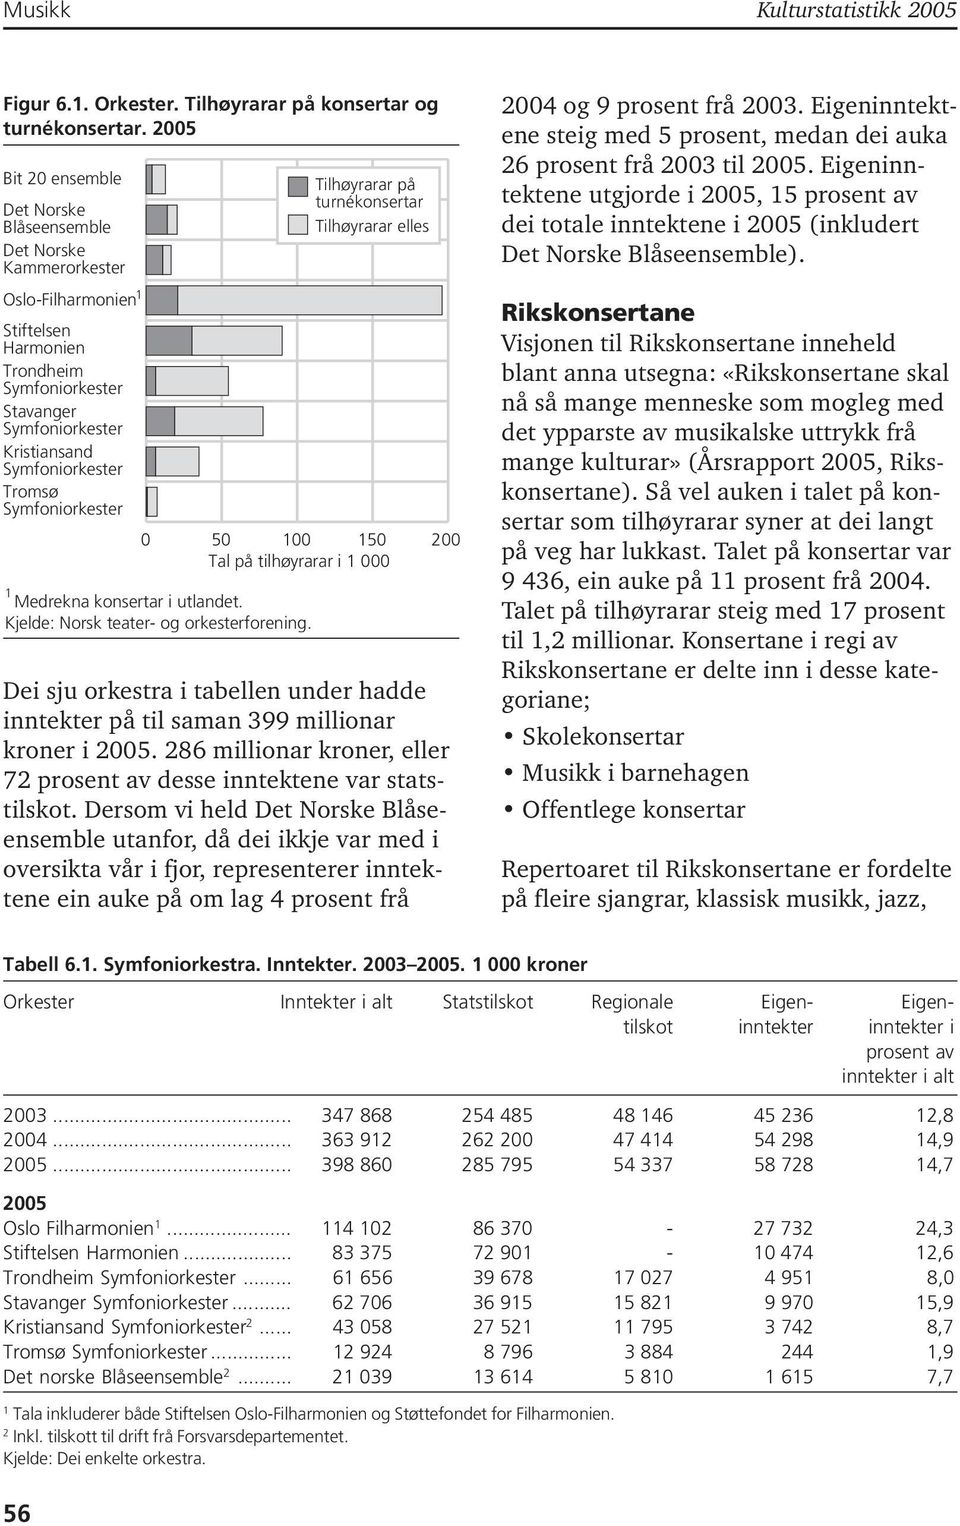 Symfoniorkester 0 50 00 50 200 Tal på tilhøyrarar i 000 Medrekna konsertar i utlandet. Kjelde: Norsk teater- og orkesterforening.